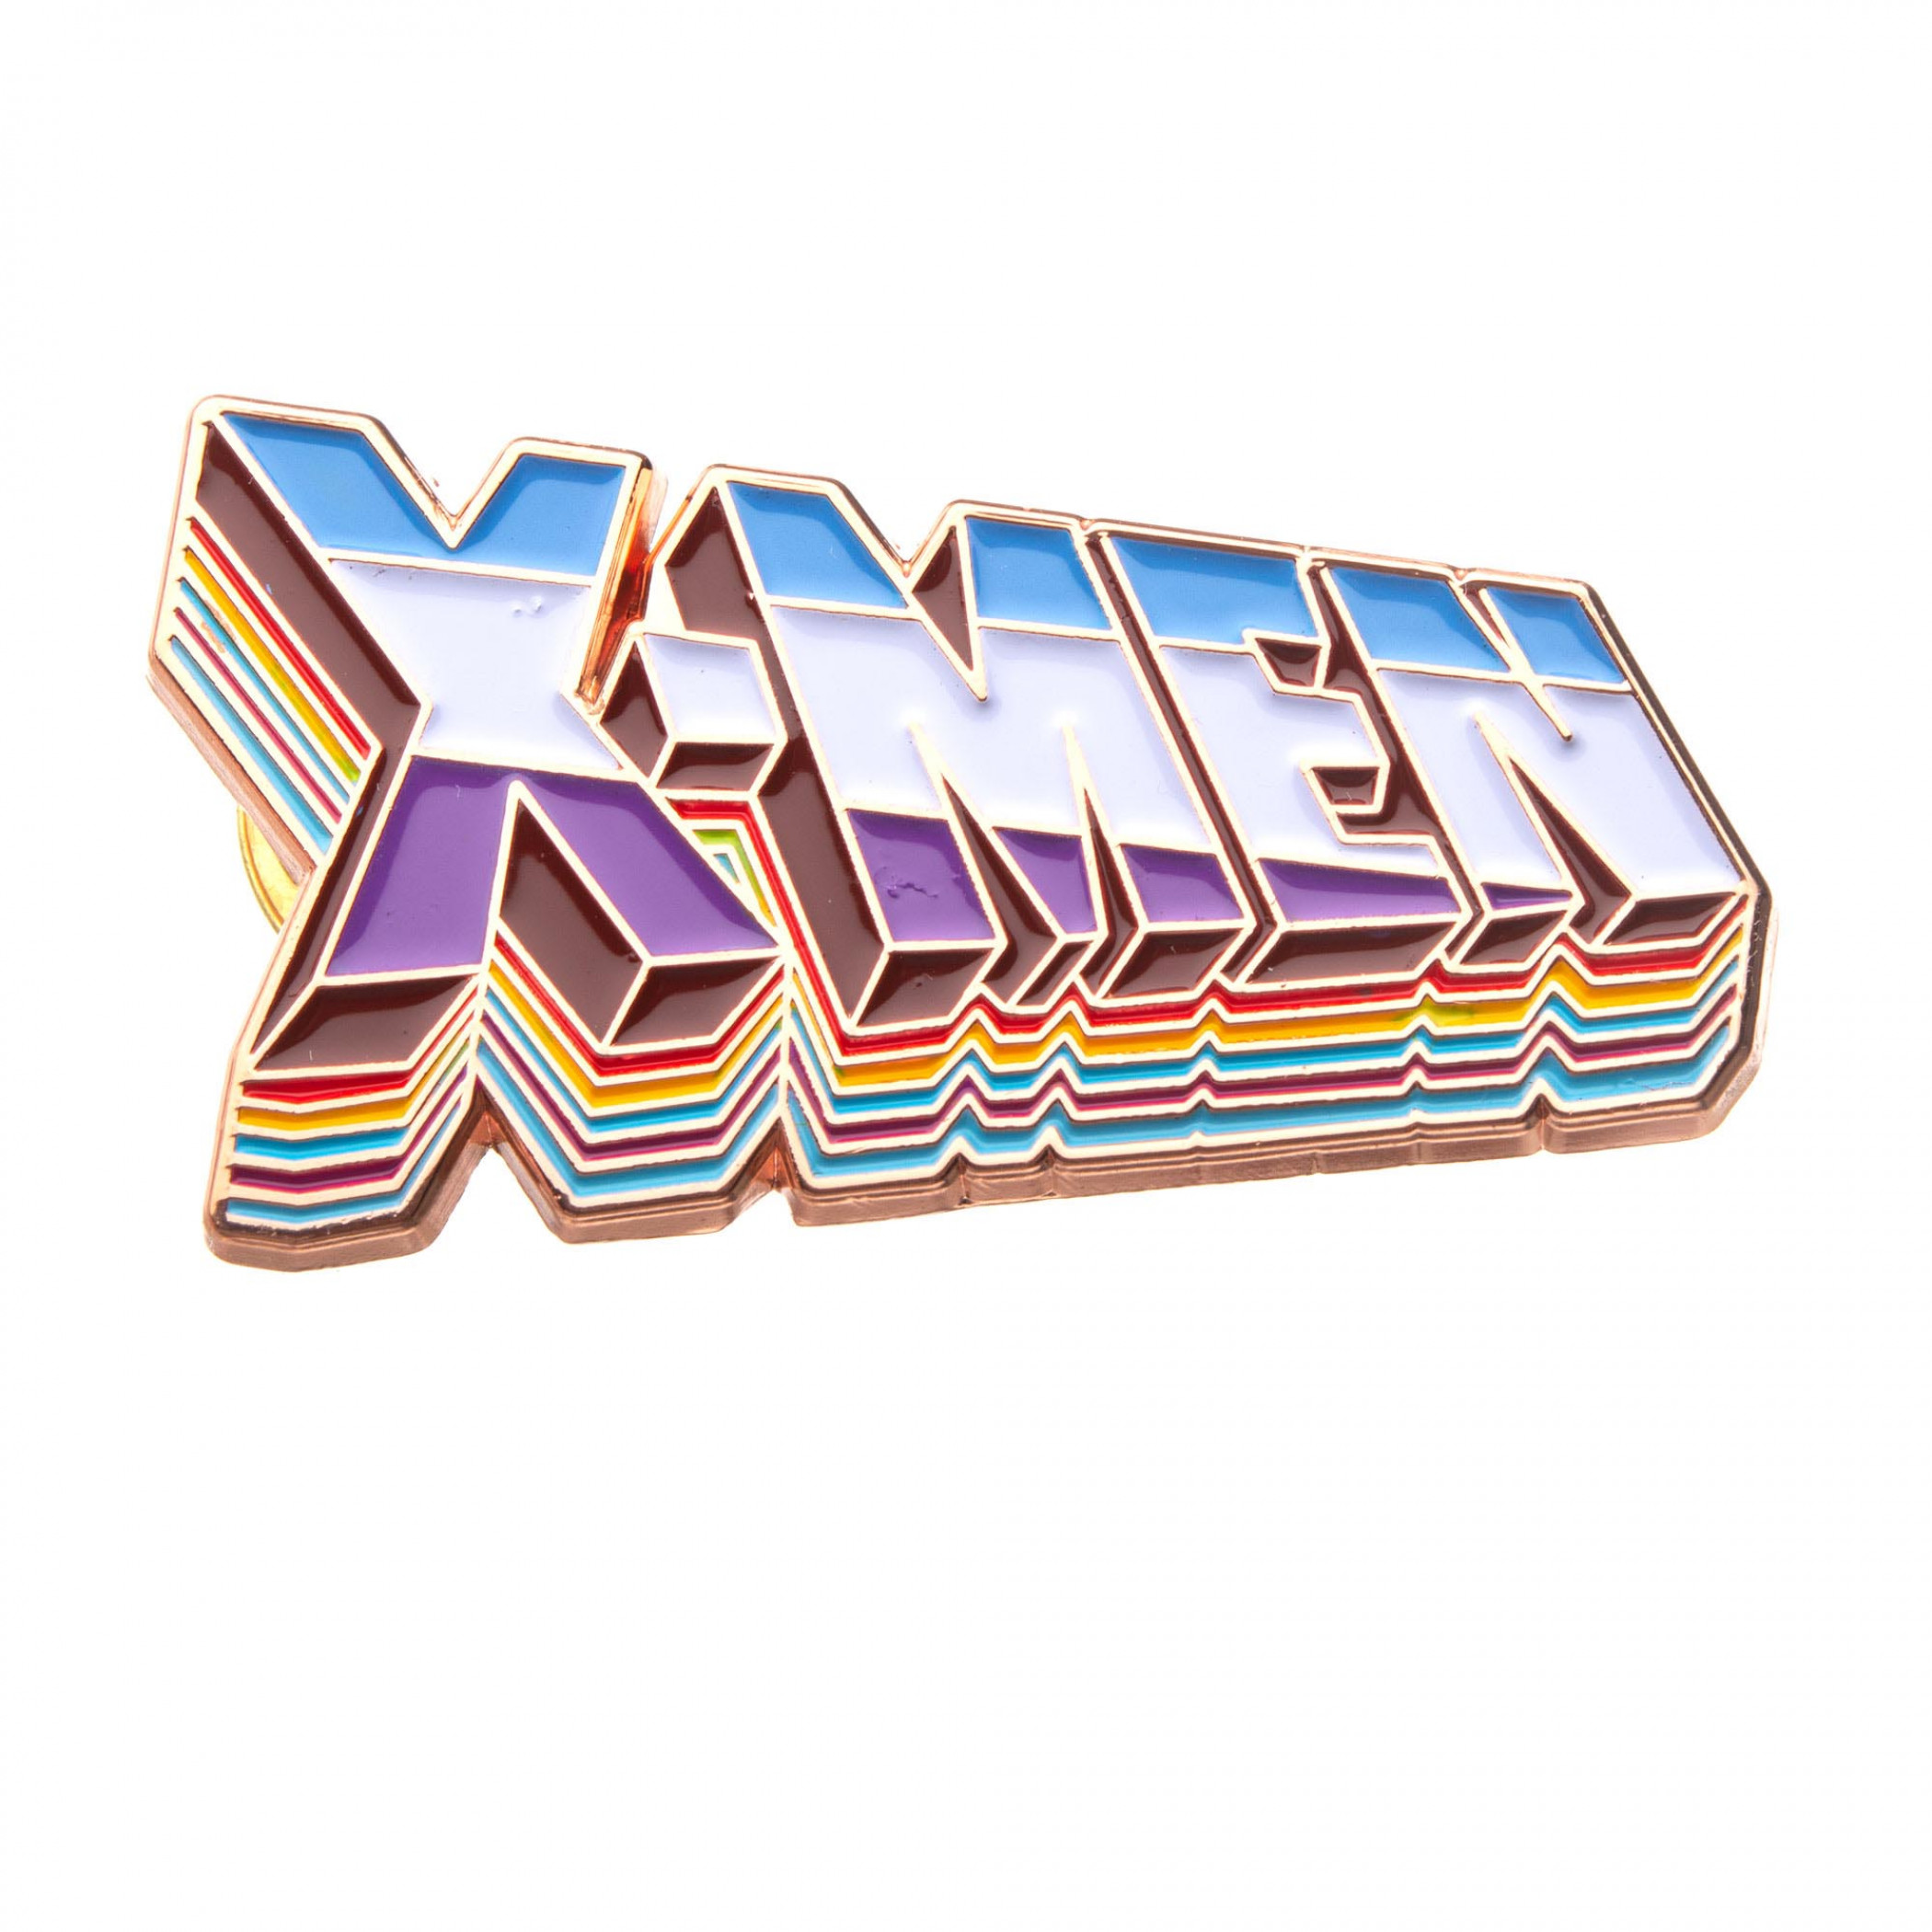 X-Men Enamel Pin